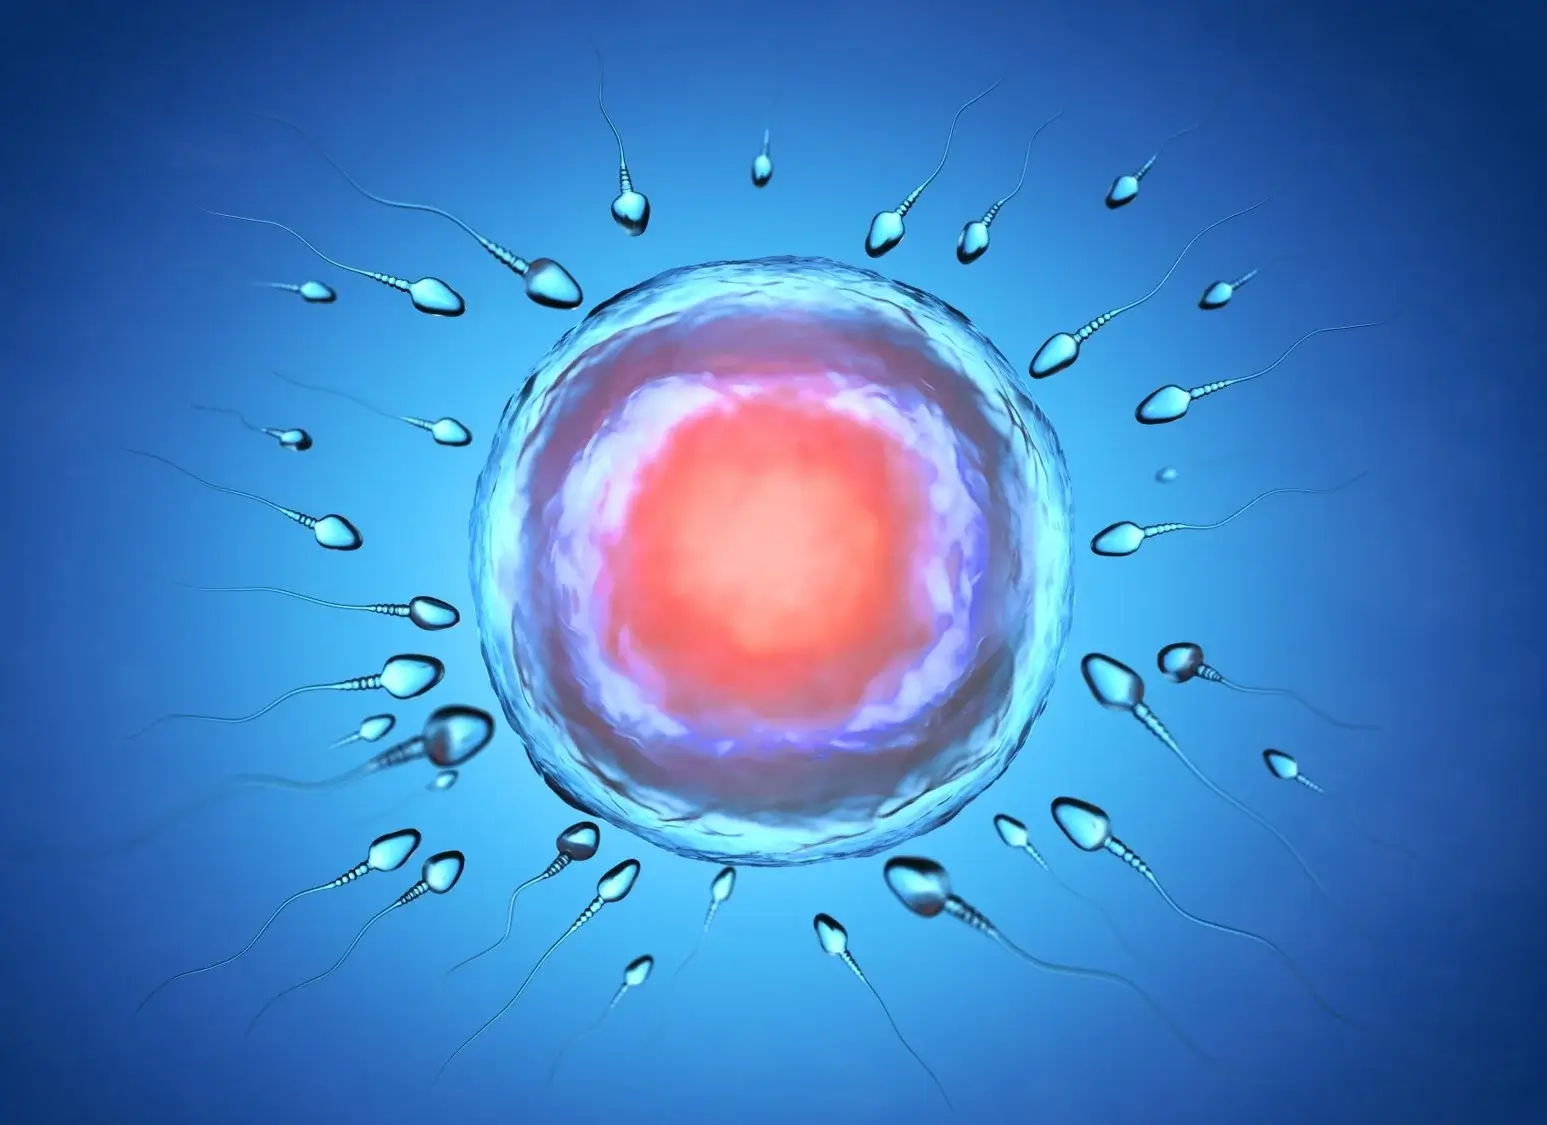 fertilización in vitro